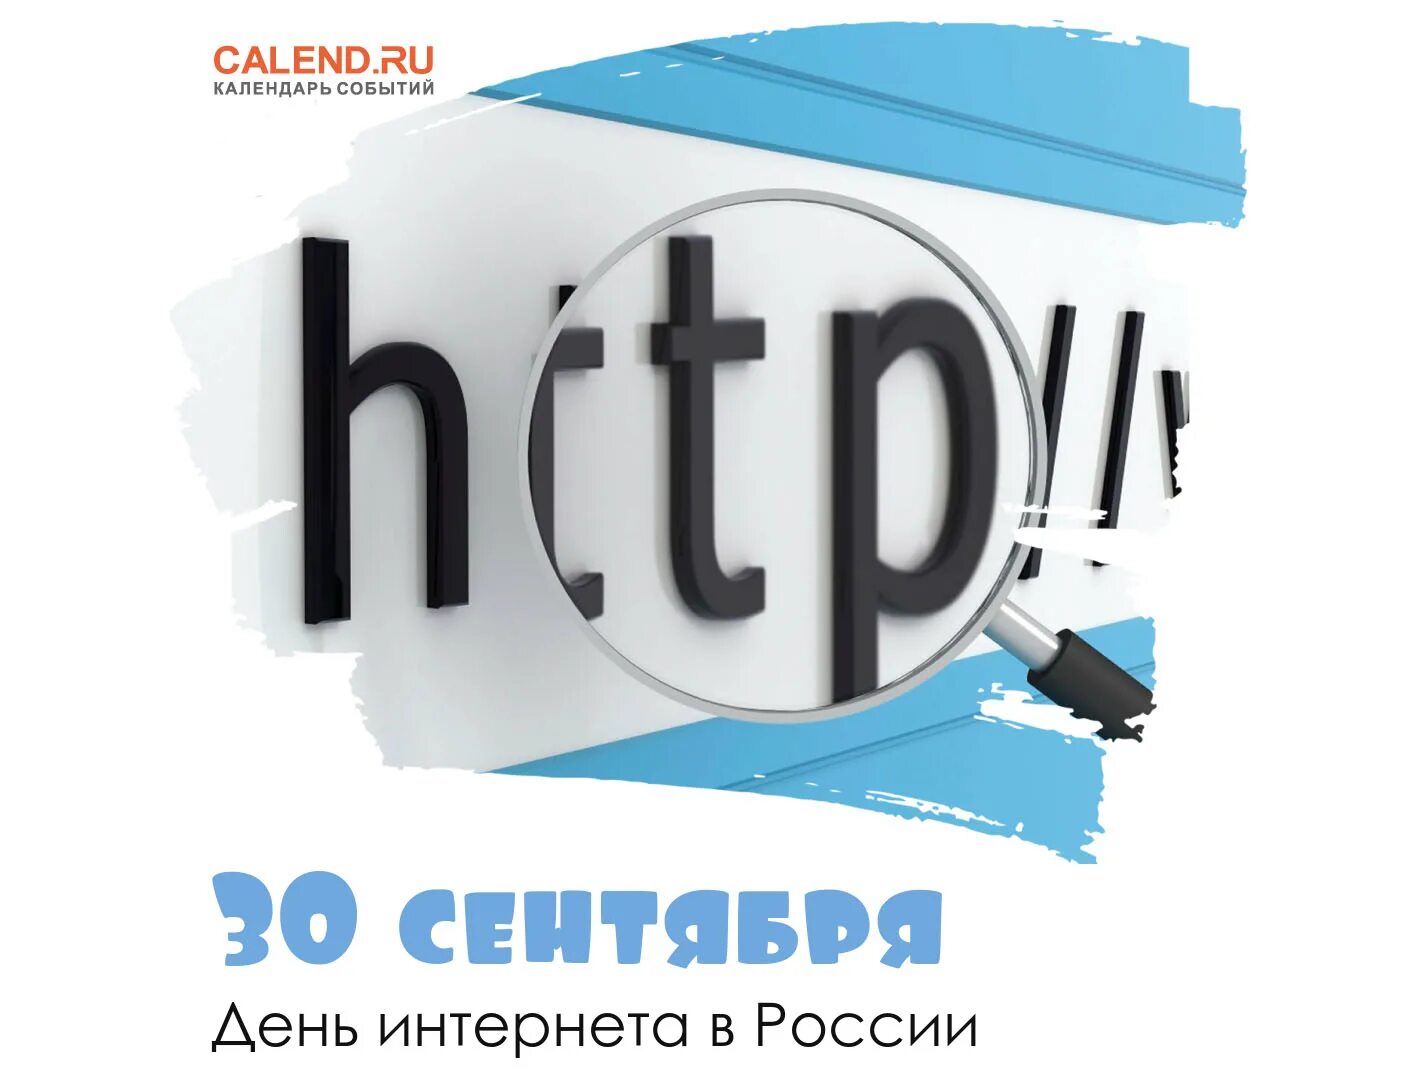 30 Сентября день интернета. День интернета в России. Международный день интернета в России. 30 Сентября в России отмечается день интернета.